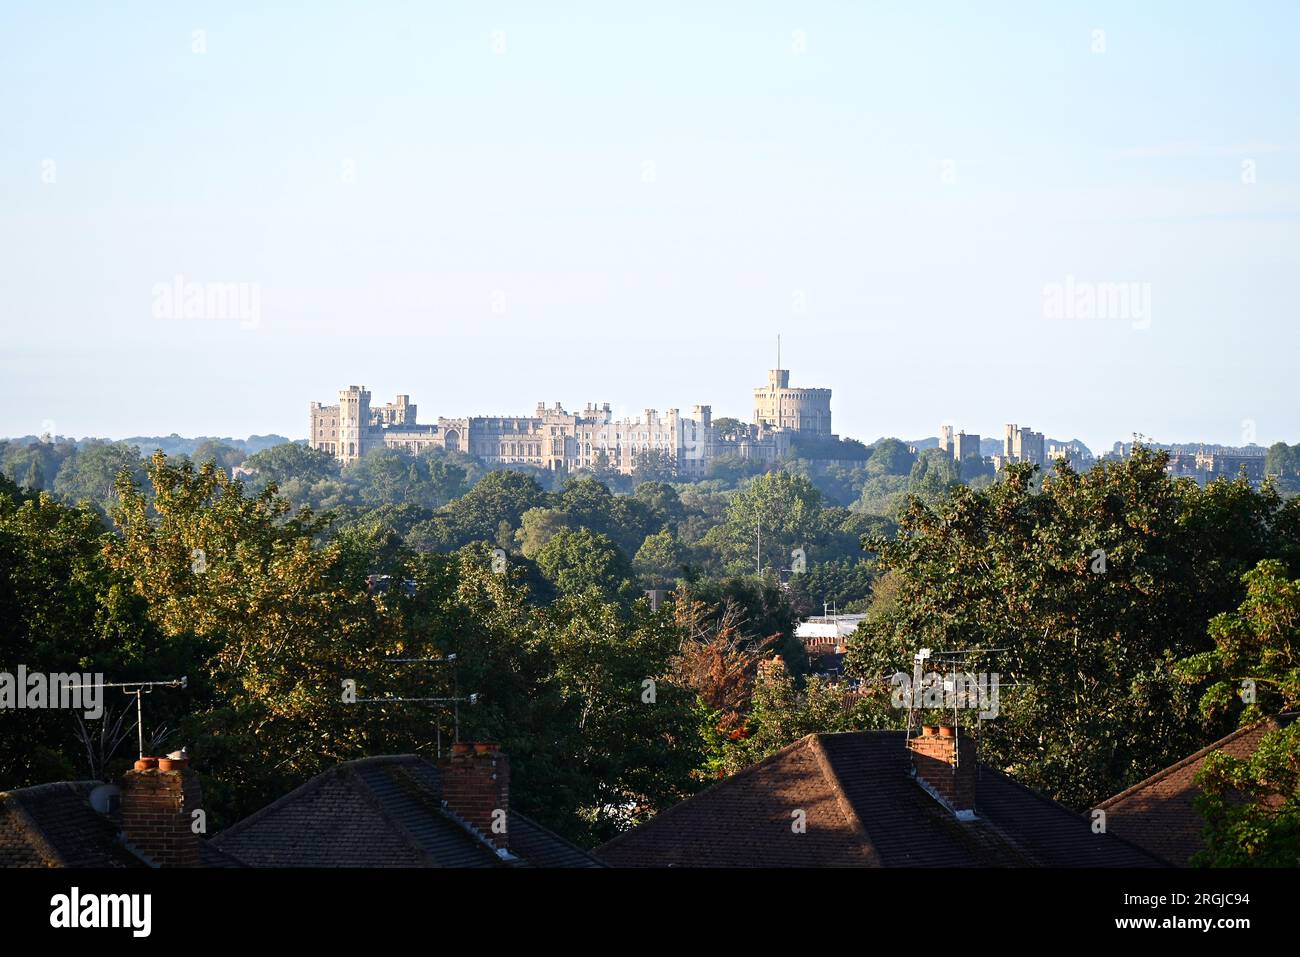 Windsor Castle ist eine königliche Residenz in Windsor in der englischen Grafschaft Berkshire. Es ist eng mit der englischen und der nachfolgenden britischen Königsfamilie verbunden und verkörpert fast ein Jahrtausend architektonischer Geschichte. Stockfoto